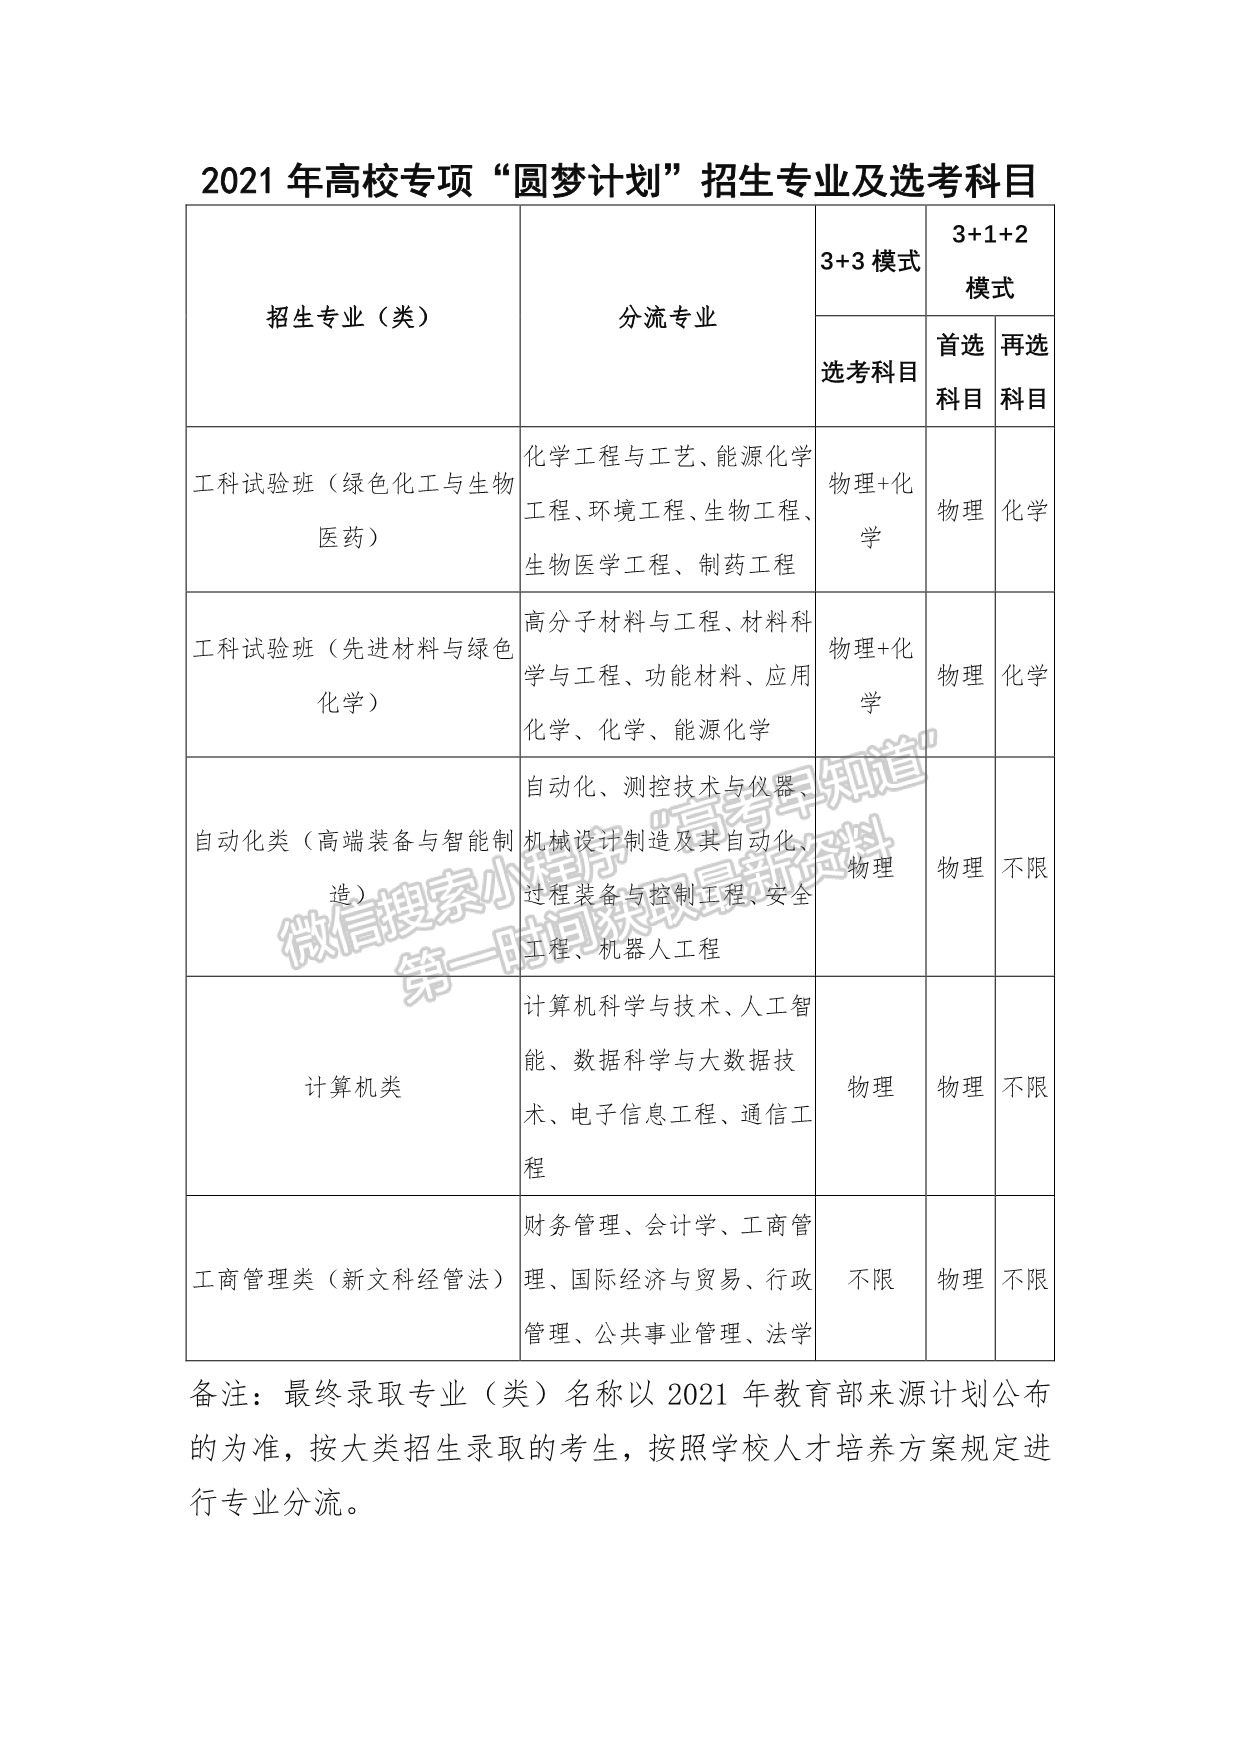 北京化工大学2021年高校专项“圆梦计划” 招生简章